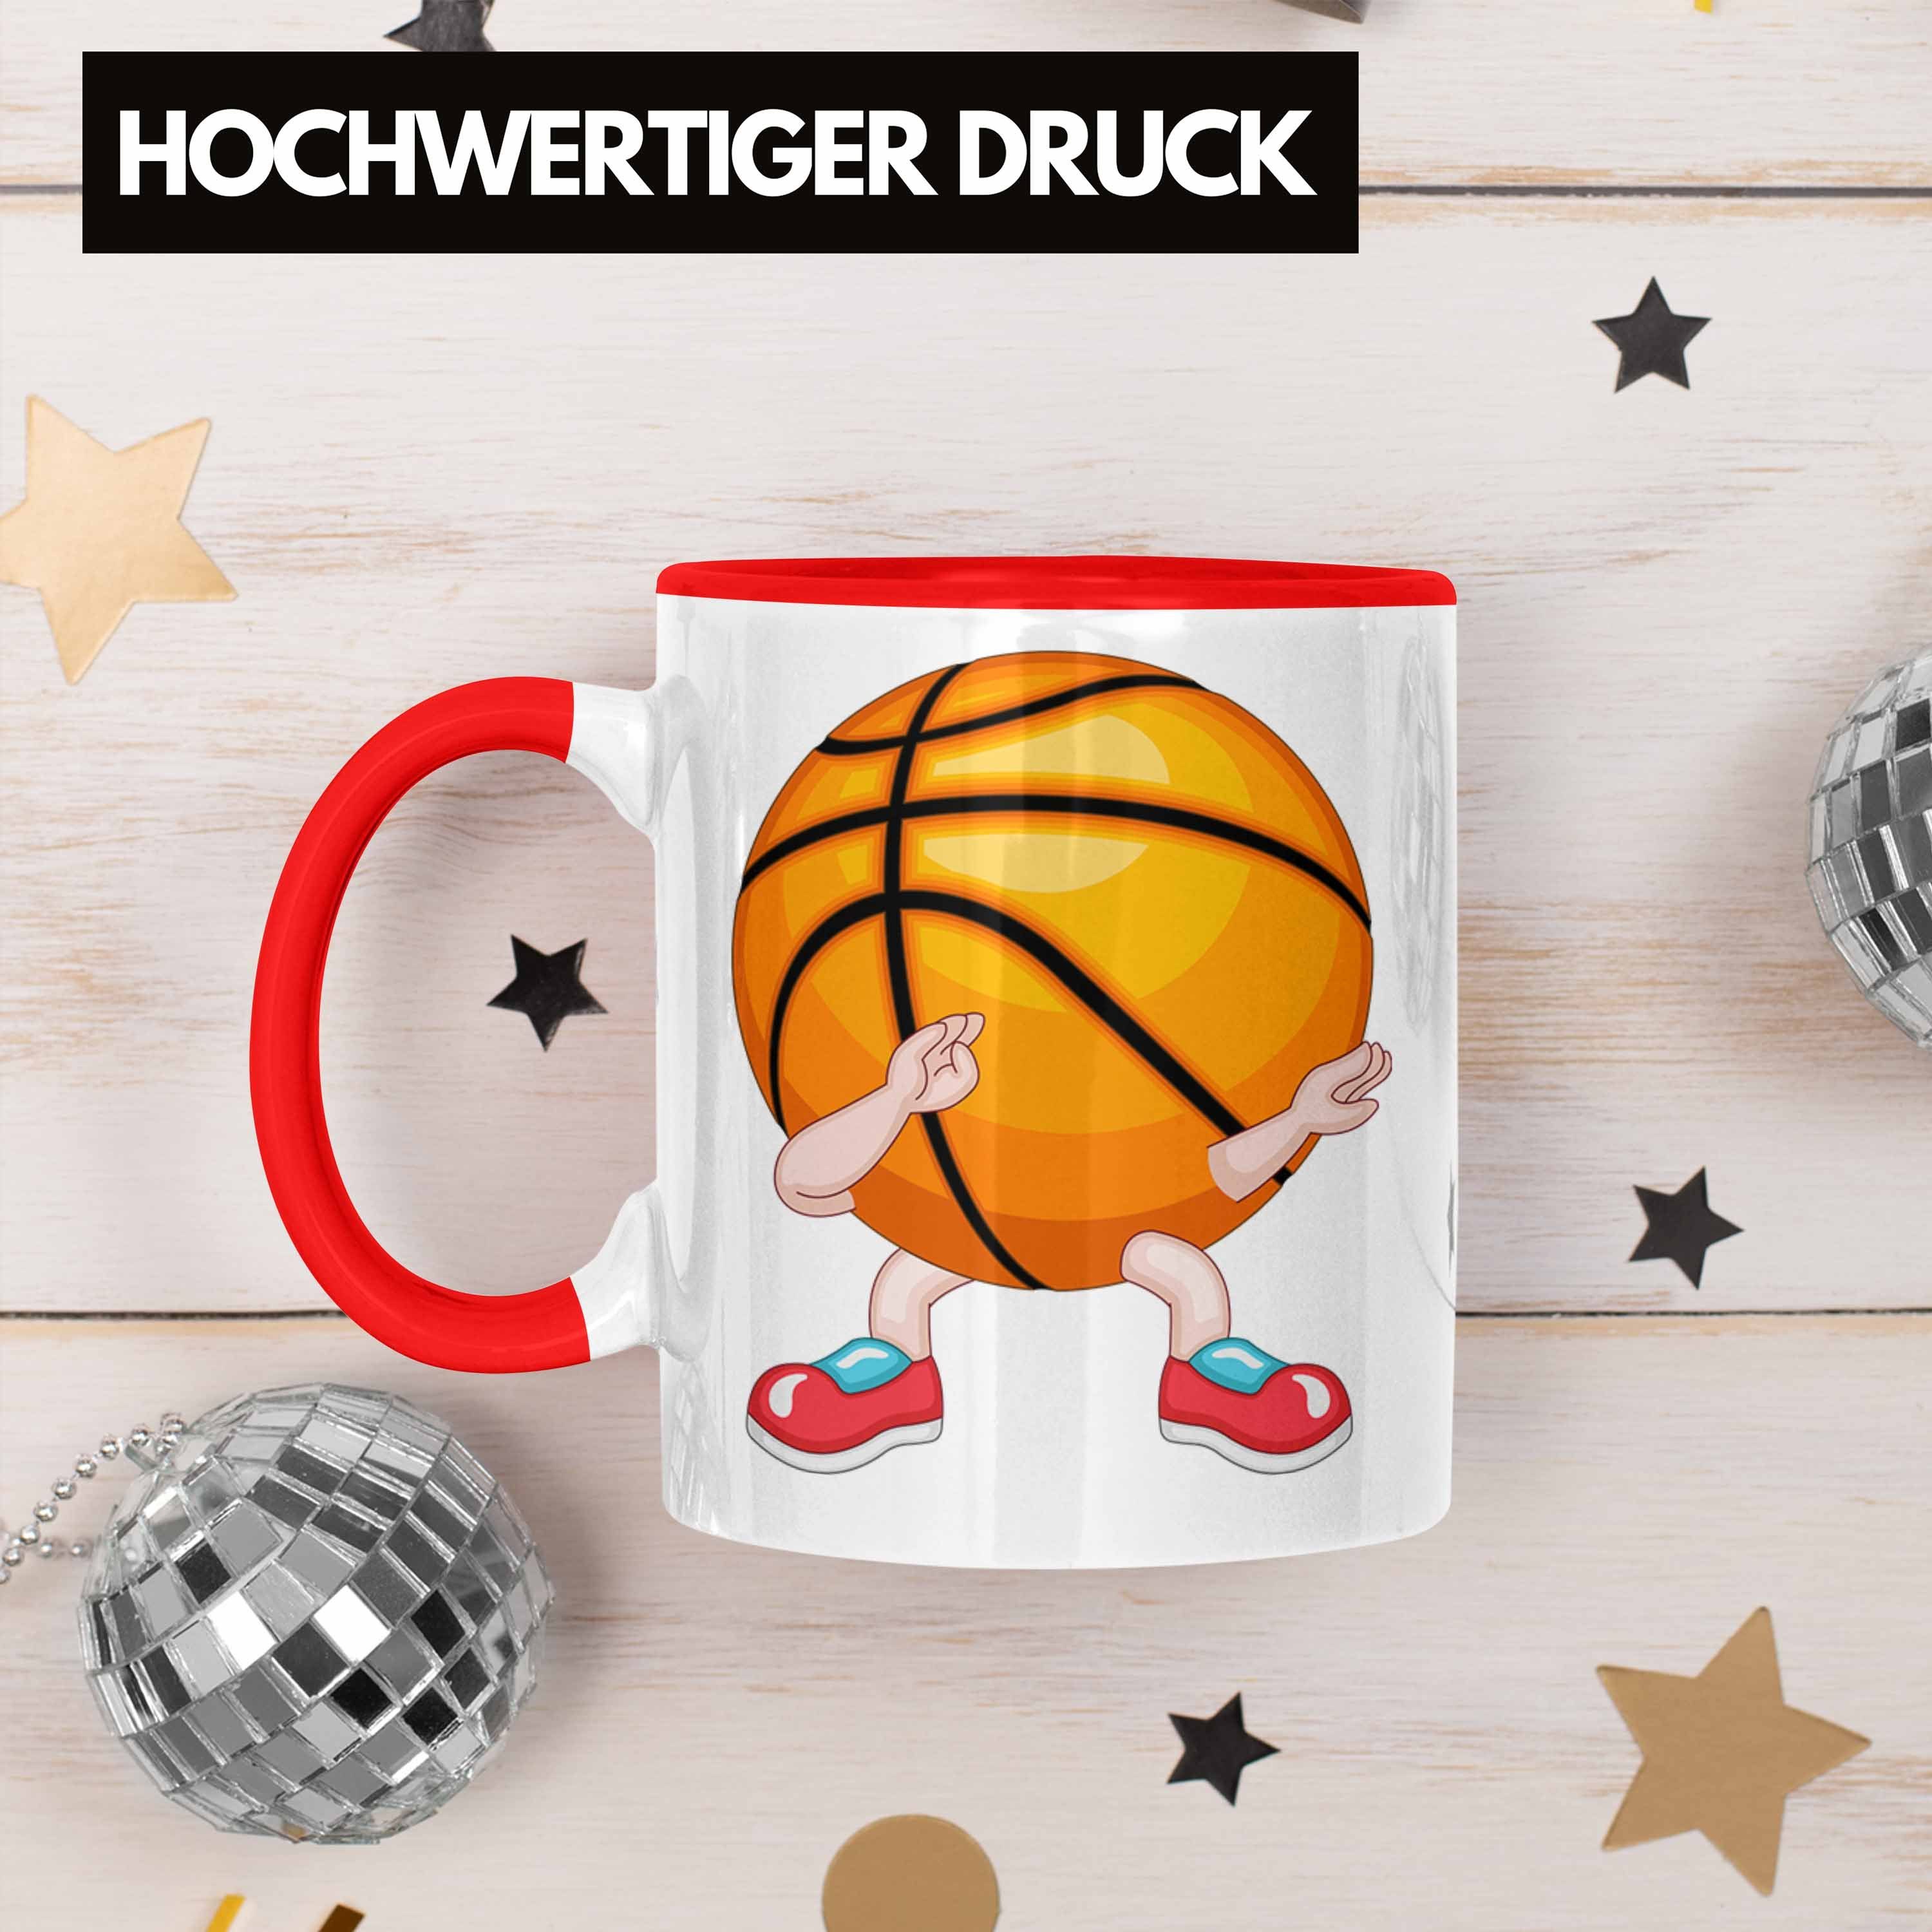 Trendation Tasse Lustige Basketball Rot Coach Trainer für Tasse Geschenk Spieler Basketball